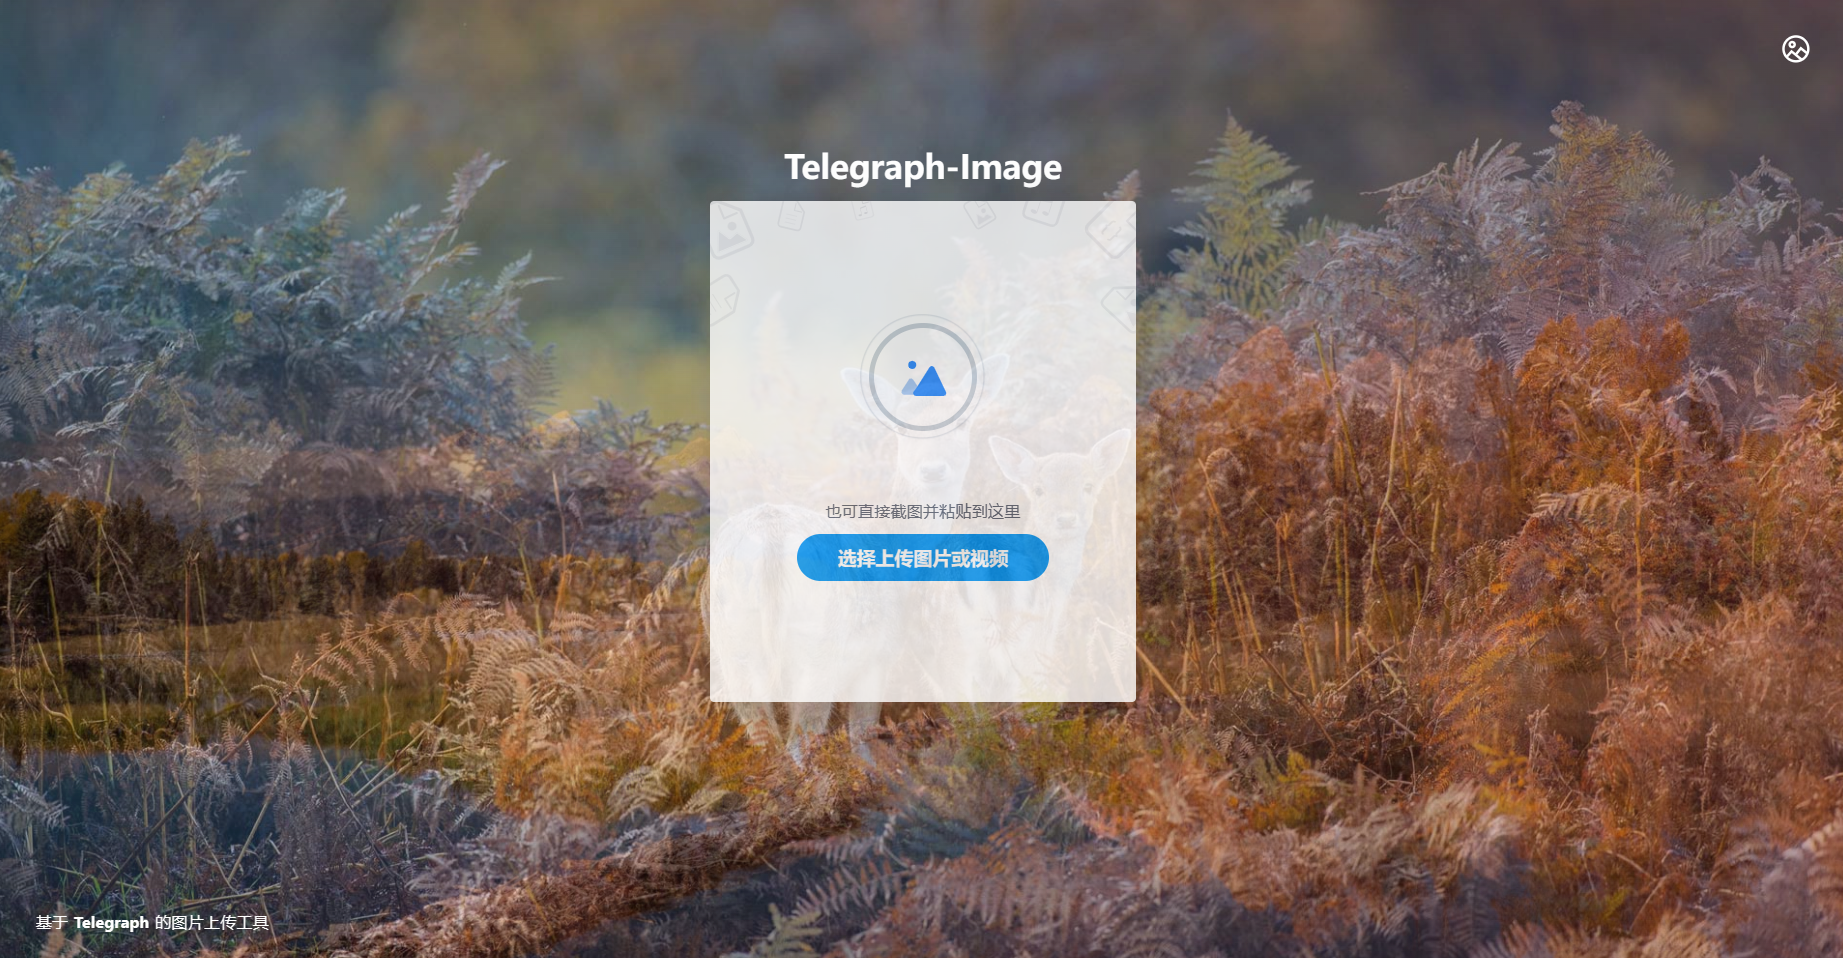 利用Telegraph-Image配合cloudflare pages无成本搭建图床